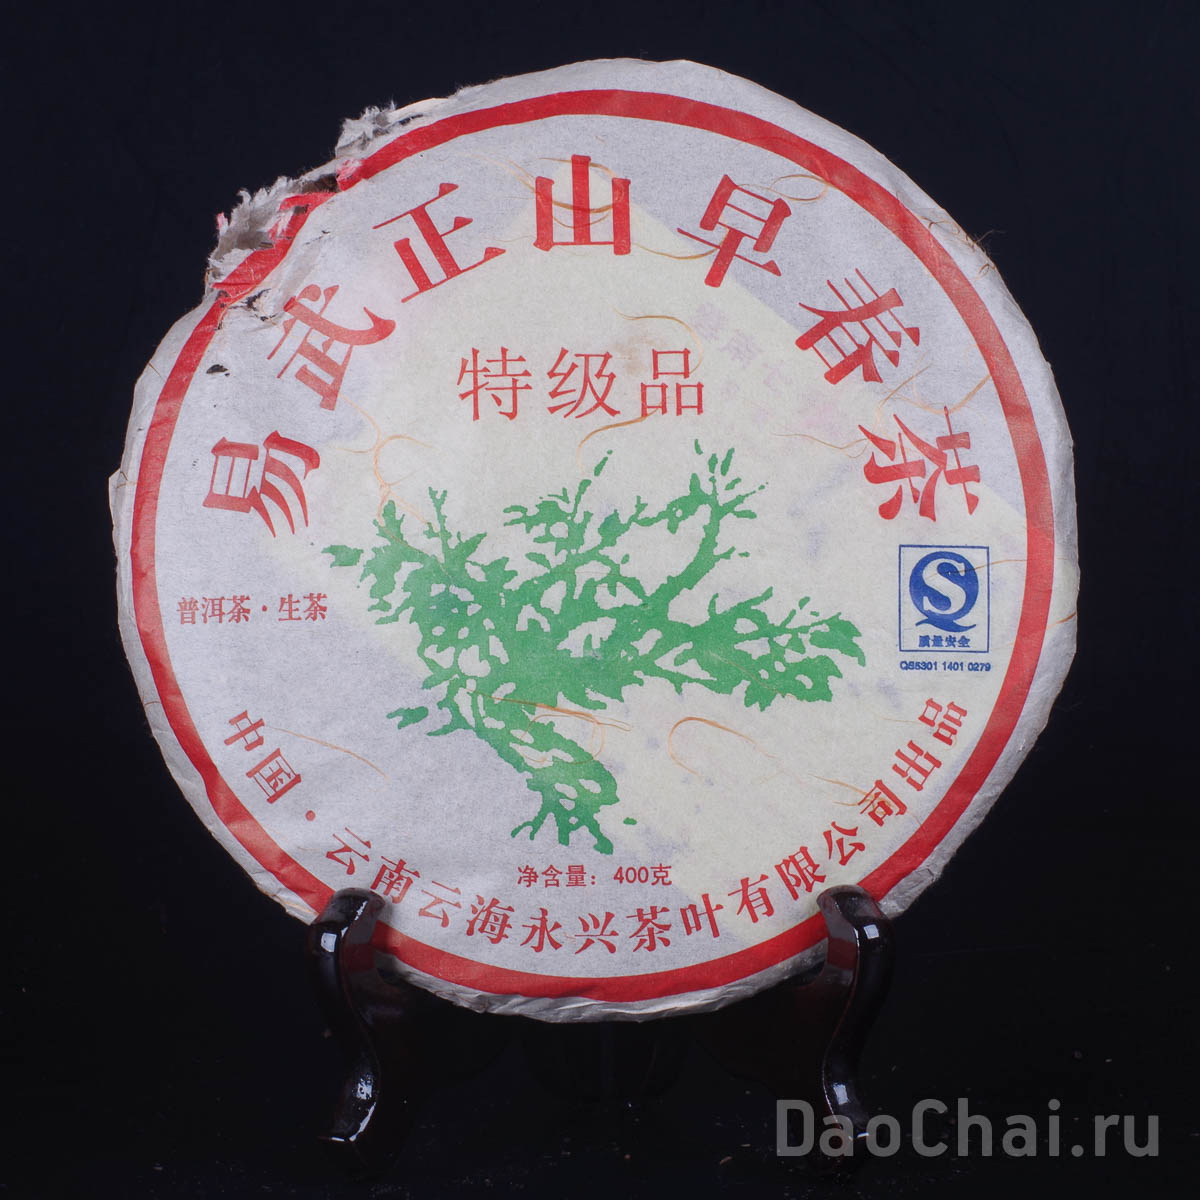 Чжен Цан Пин  "Коллекционный чай", 2007-